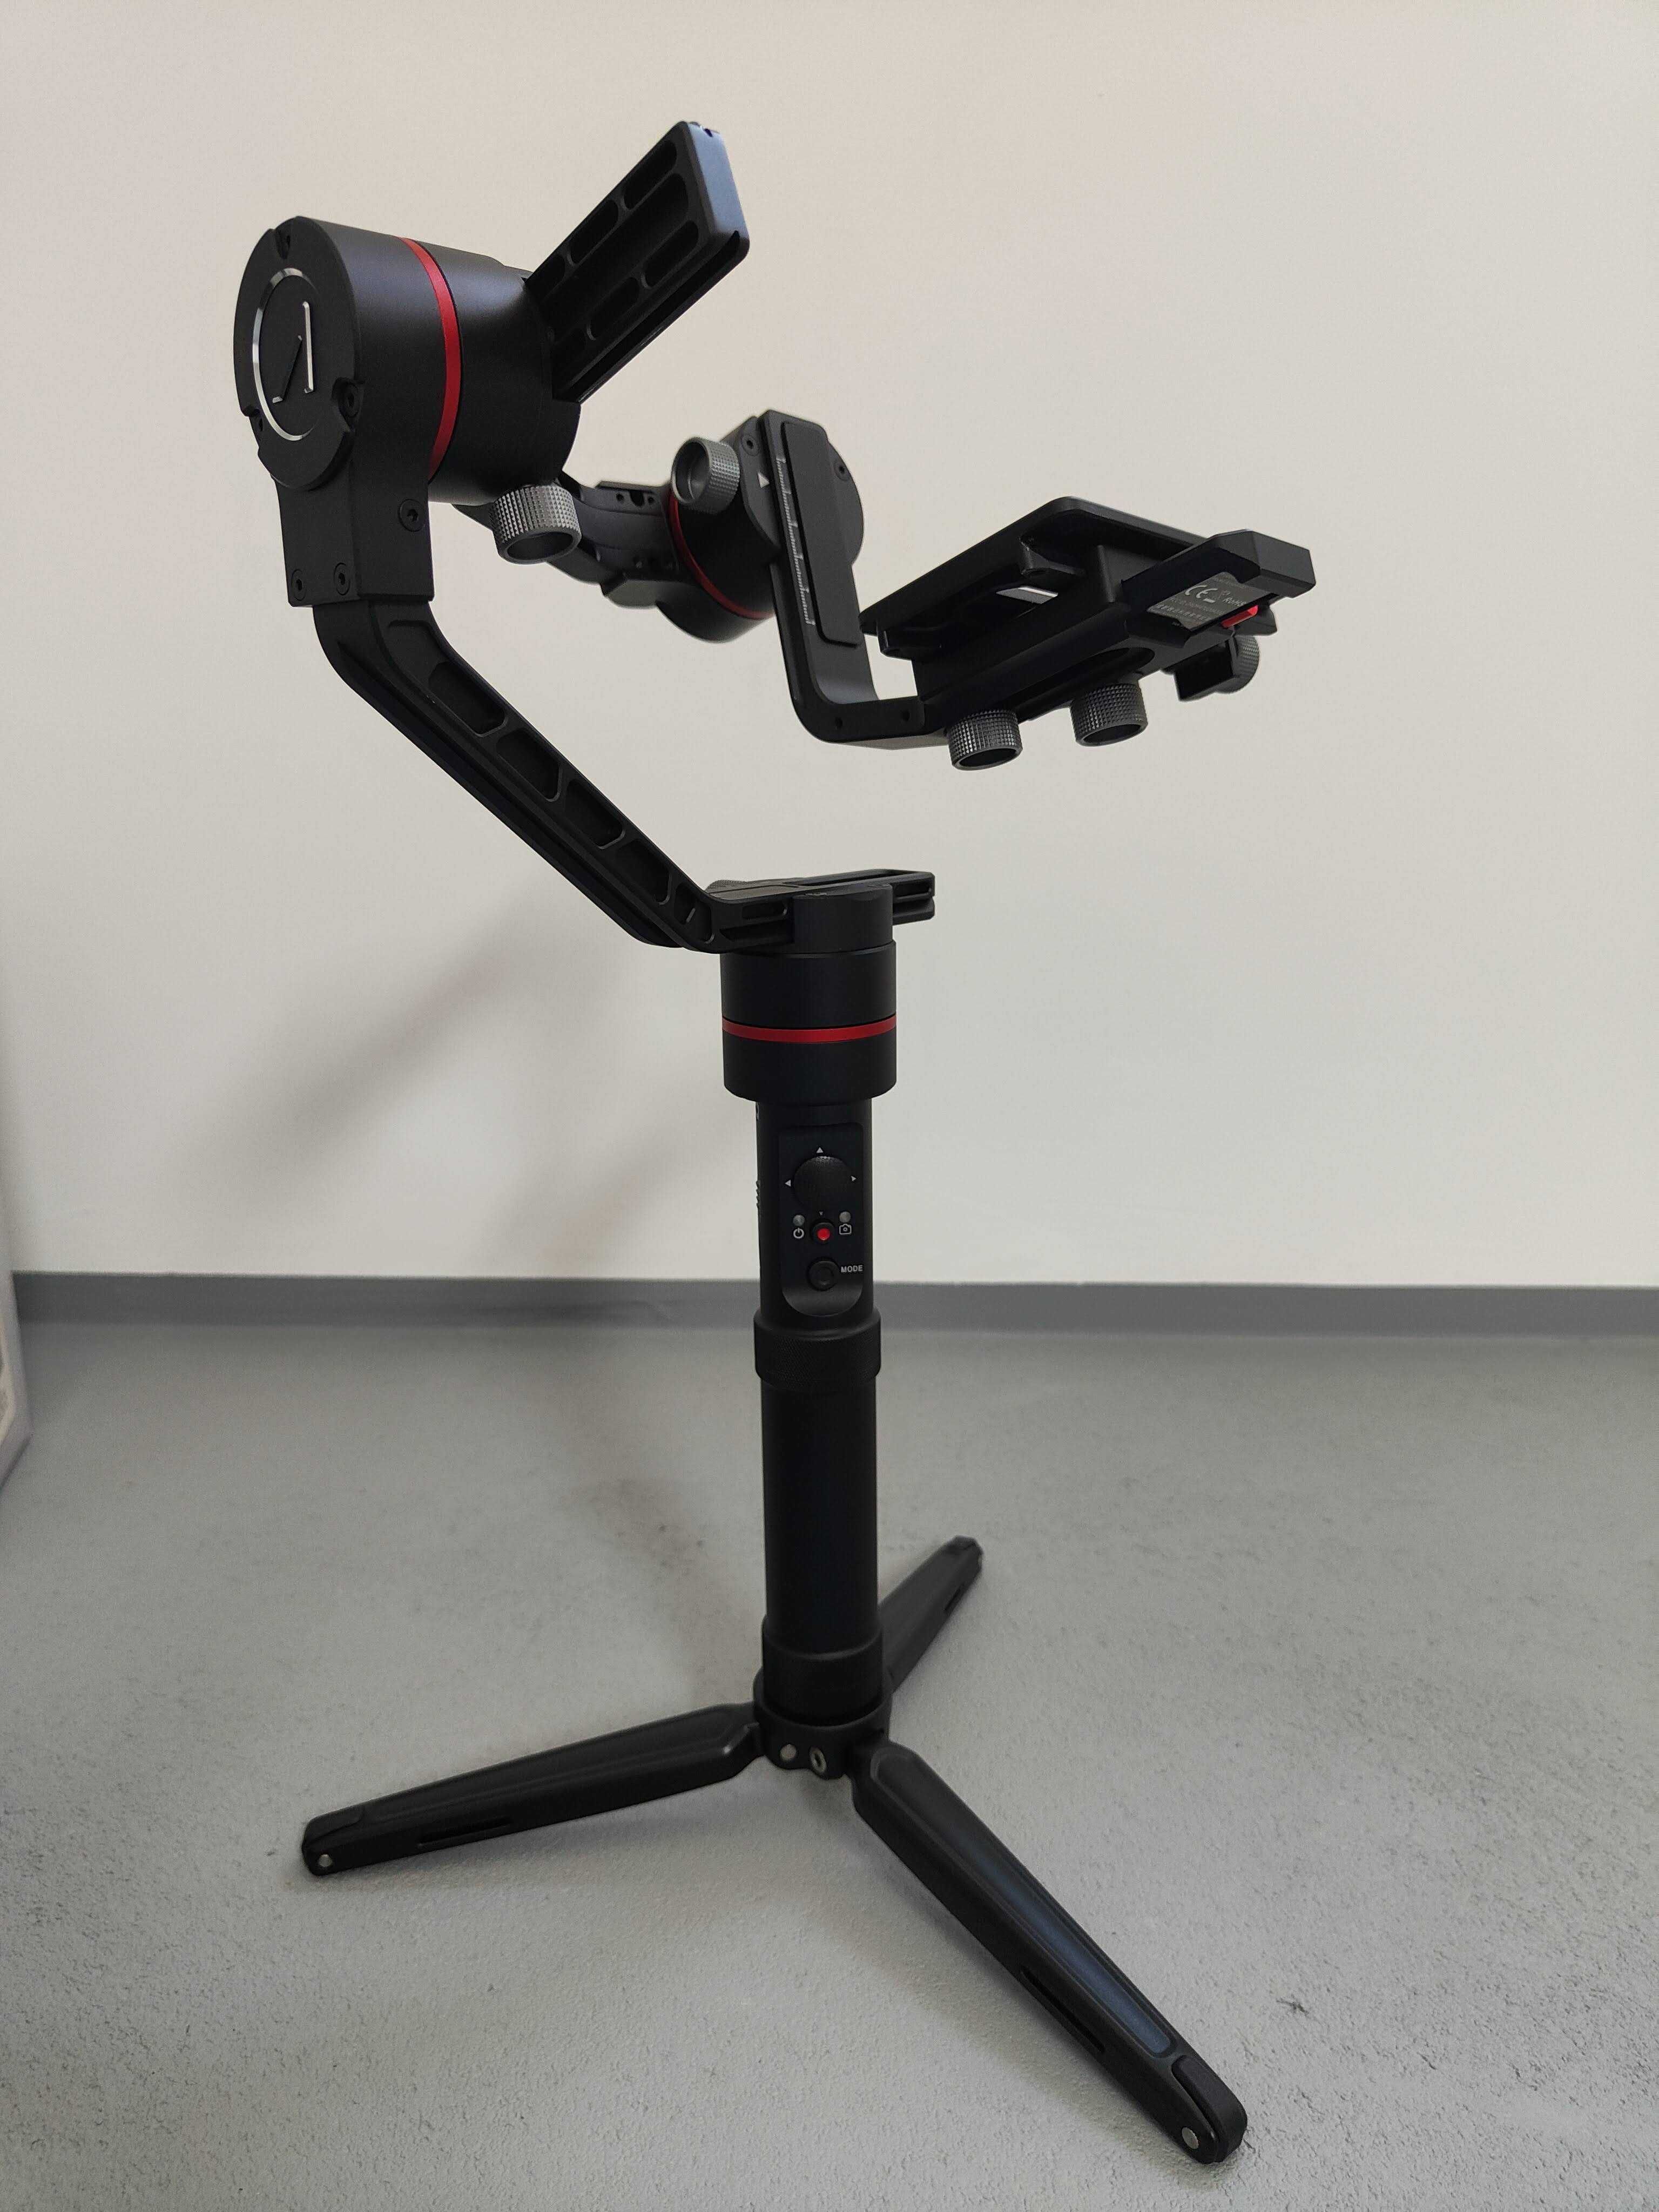 Estabilizador gimbal Accsoon A1 para câmaras fotográficas até 2,5 kg